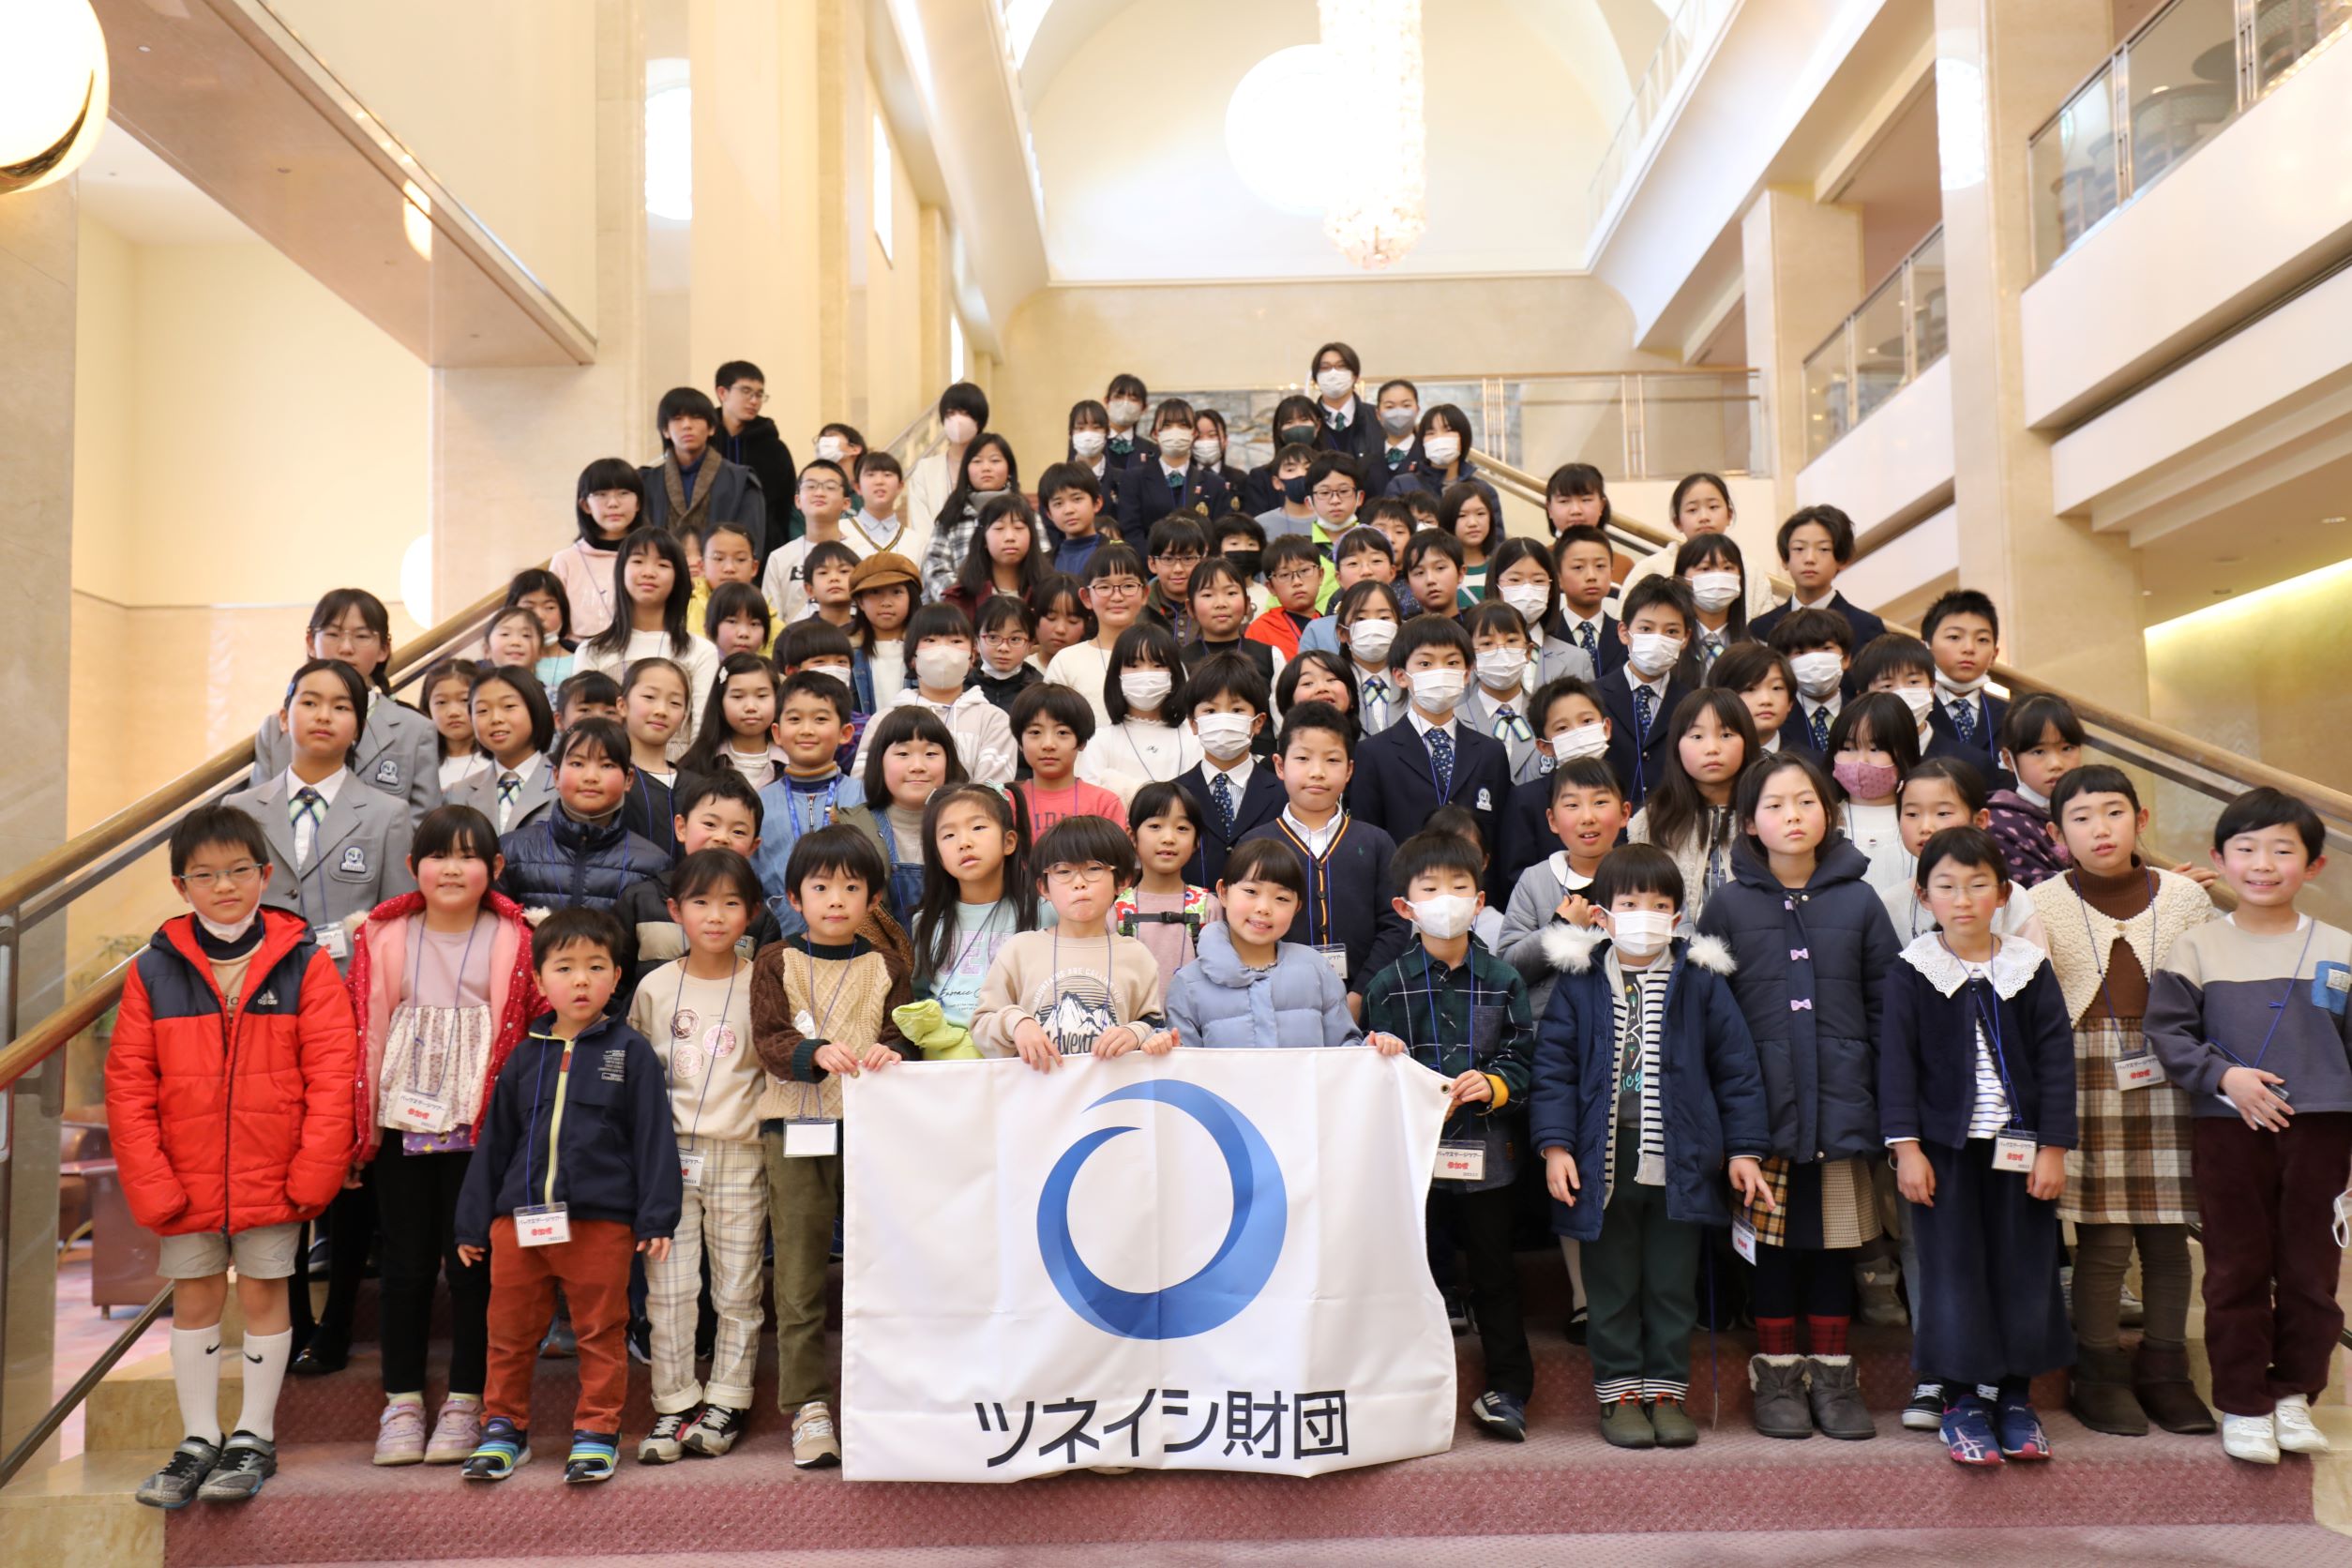 ツネイシ財団 地域の小中高生105名を招待し、 広島交響楽団第29回福山定期演奏会リハーサル・バックステージツアーを開催